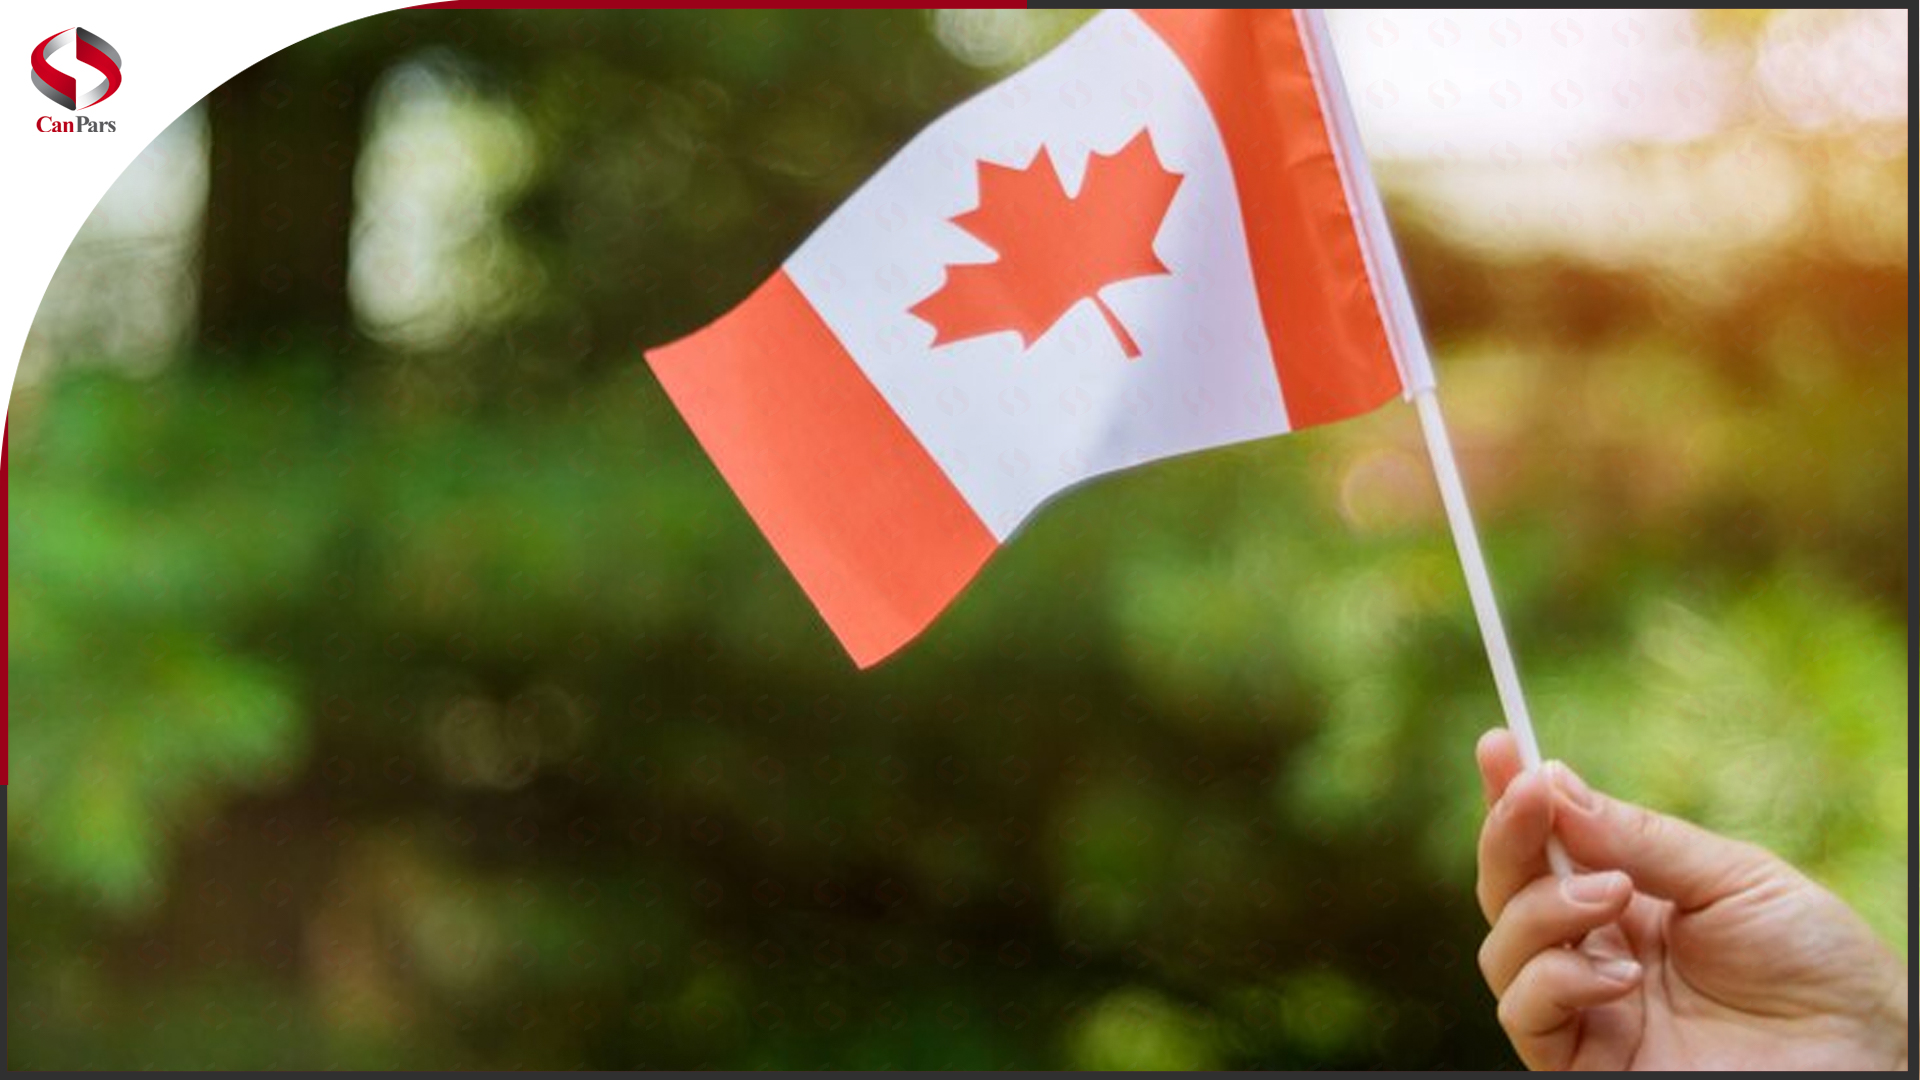 روز ملی کانادا